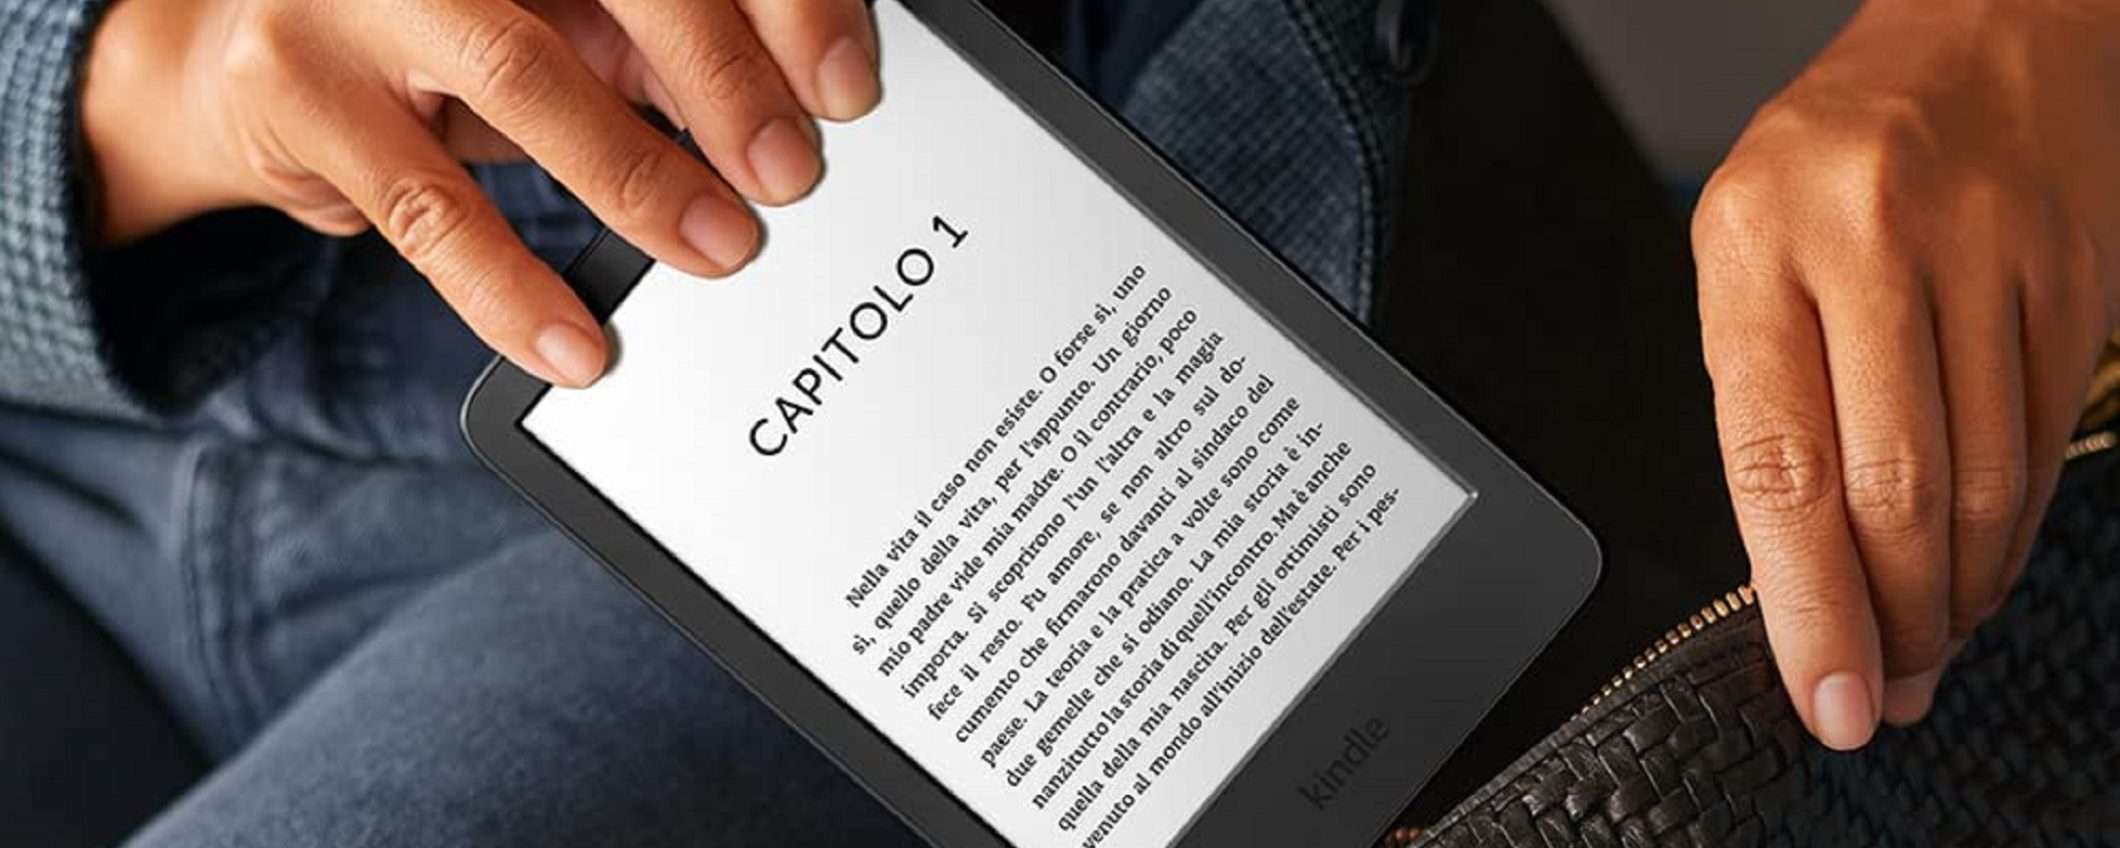 Amazon Kindle 2022: promozione di Amazon e risparmio garantito